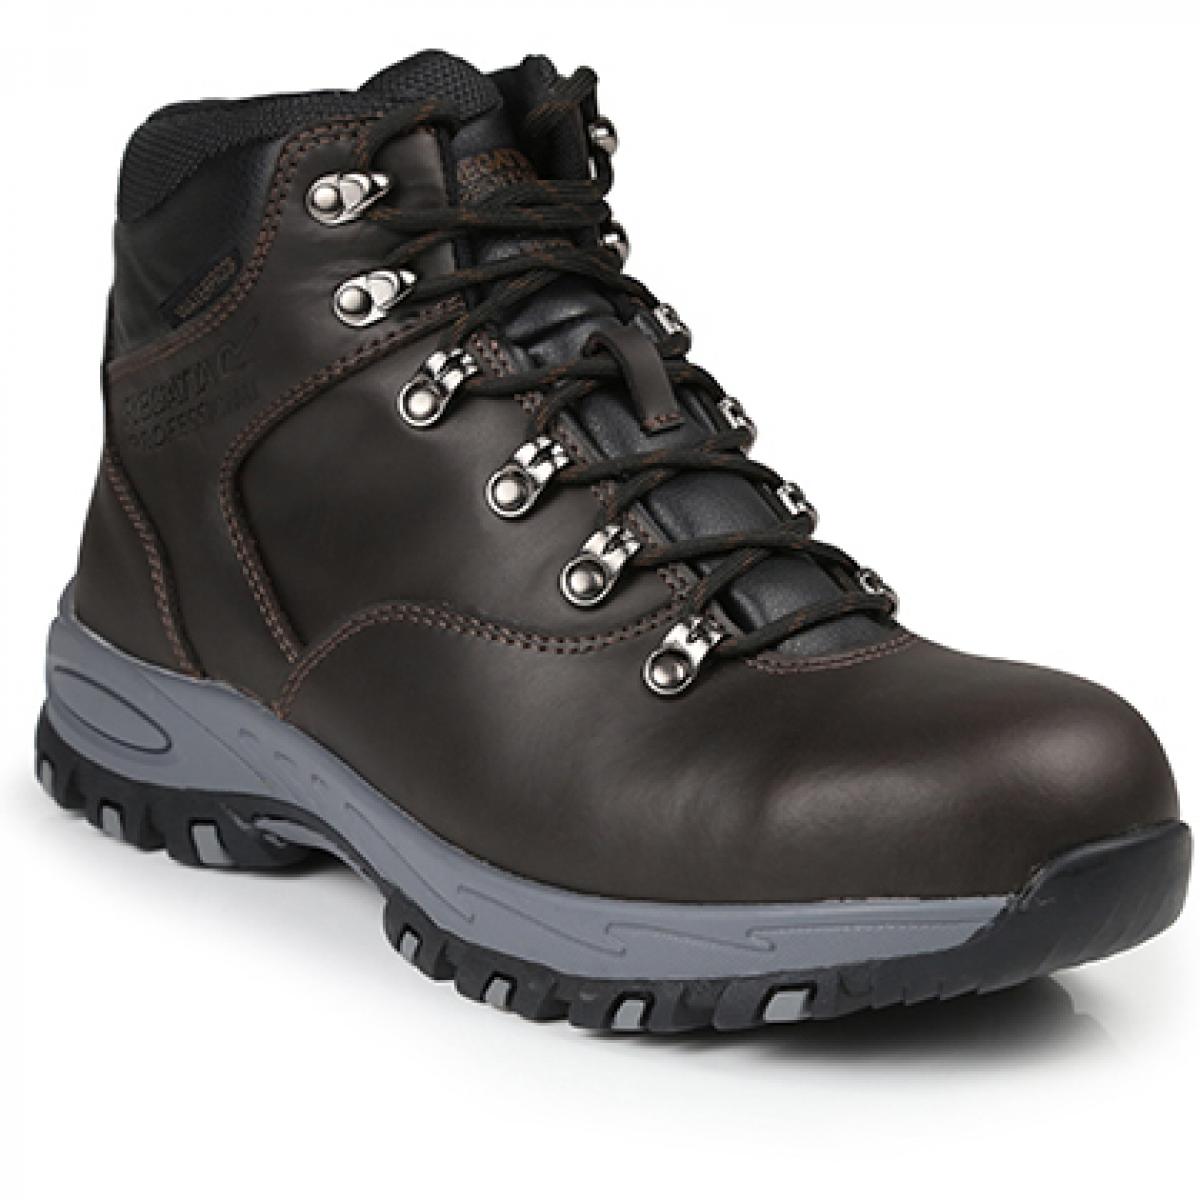 Hersteller: Regatta Safety Footwear Herstellernummer: TRK203 Artikelbezeichnung: Gritstone S3 Waterproof Safety Hiker - Sicherheitschuhe Farbe: Peat